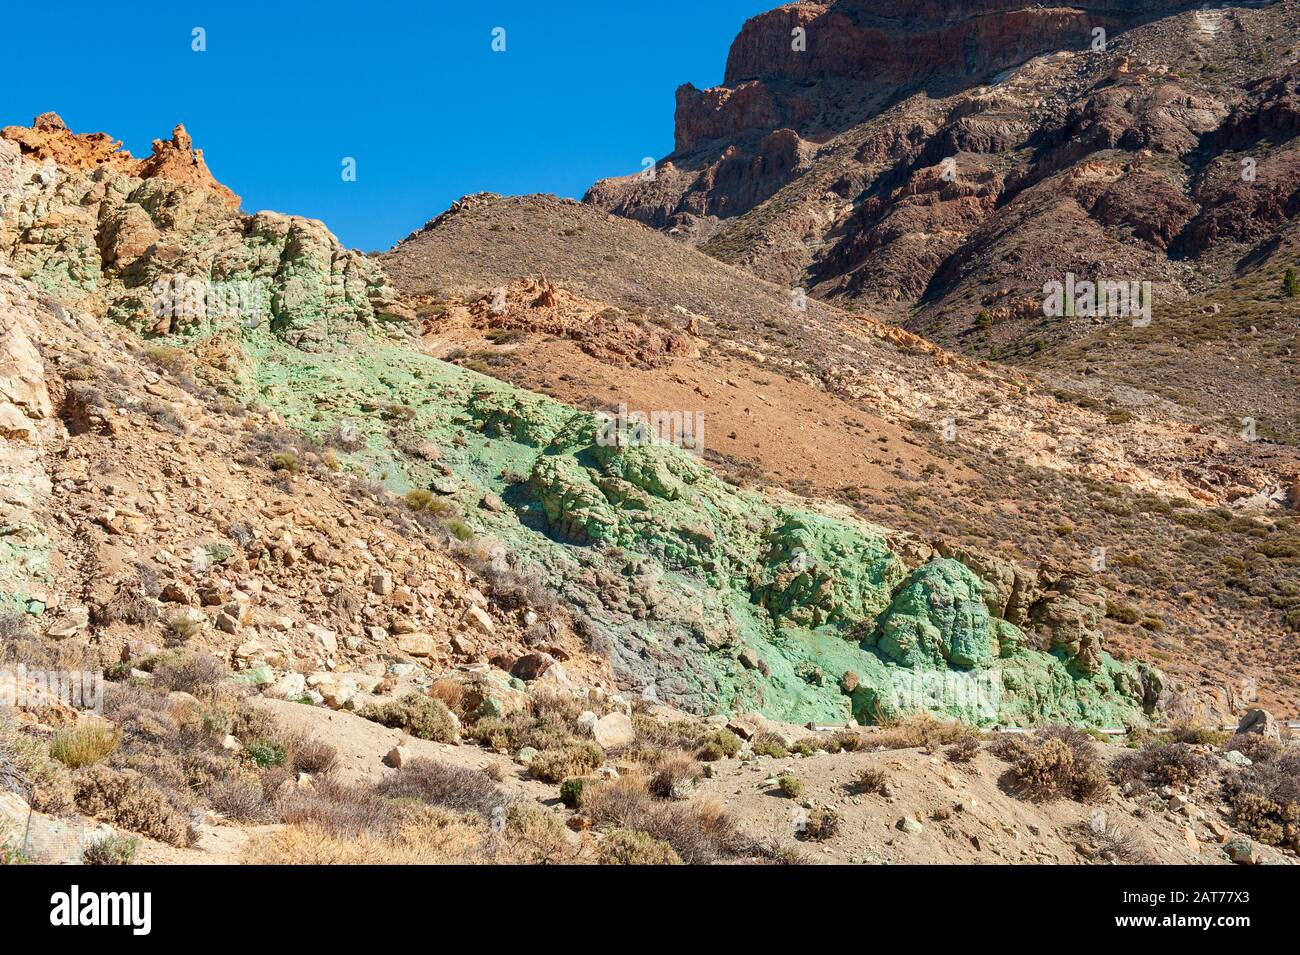 Roches vertes dans le parc national de Teide sur l'île des Canaries Tenerife. Banque D'Images